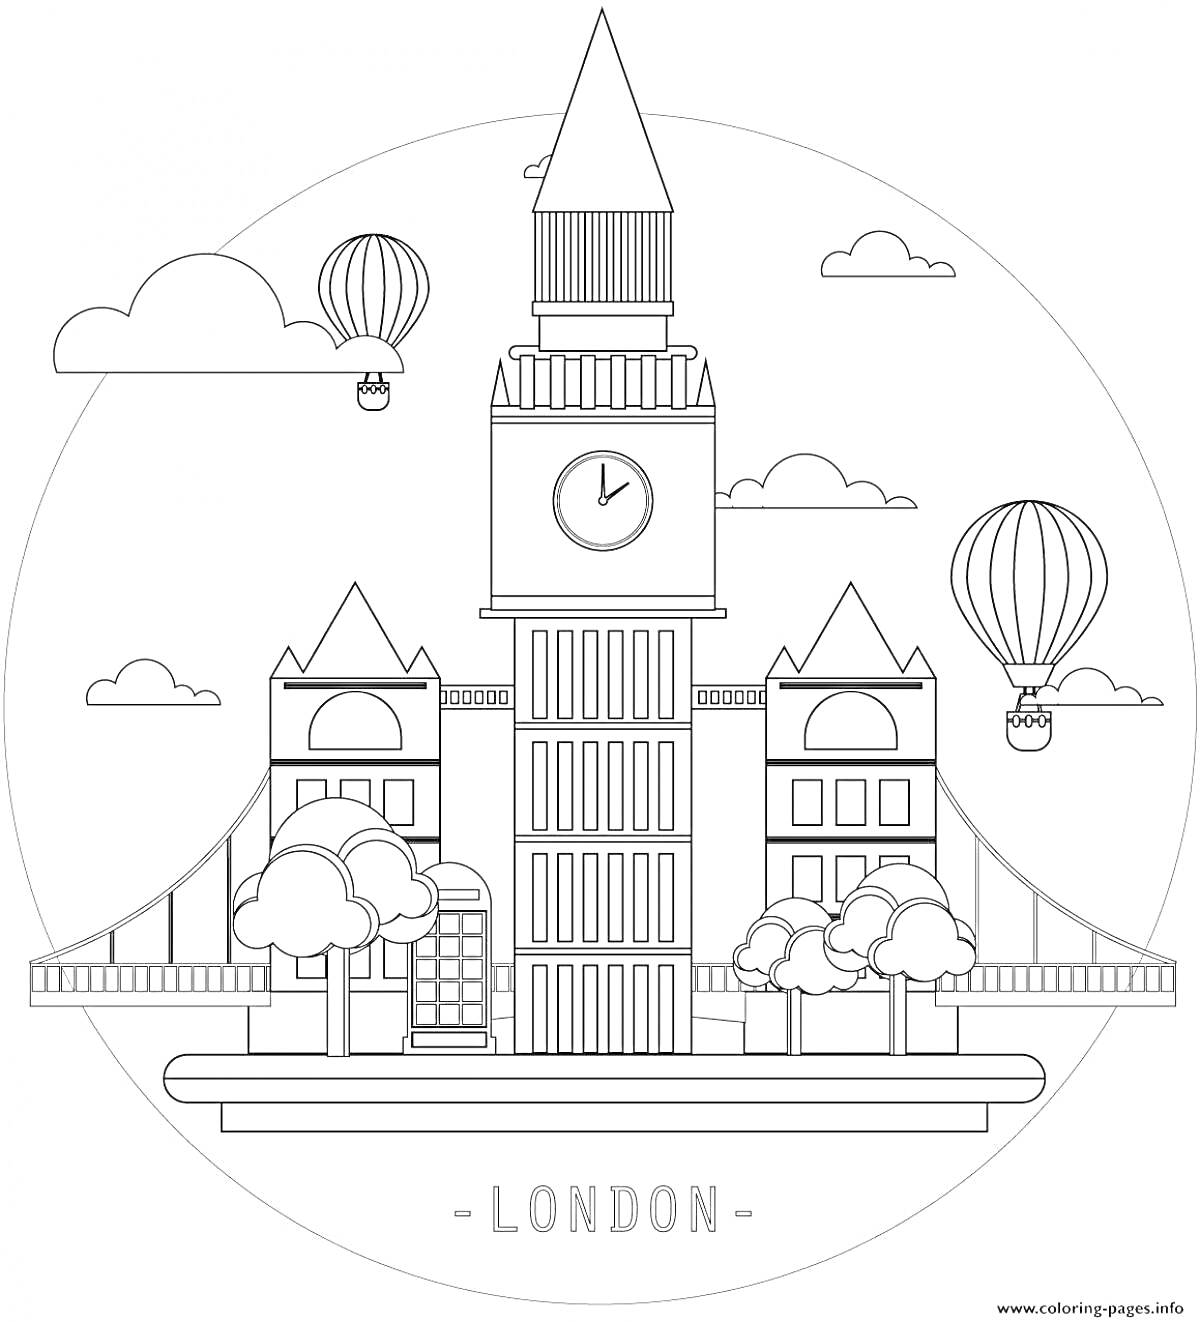 Раскраска Лондон - Биг-Бен, деревья, воздушные шары, облака и телефонная будка